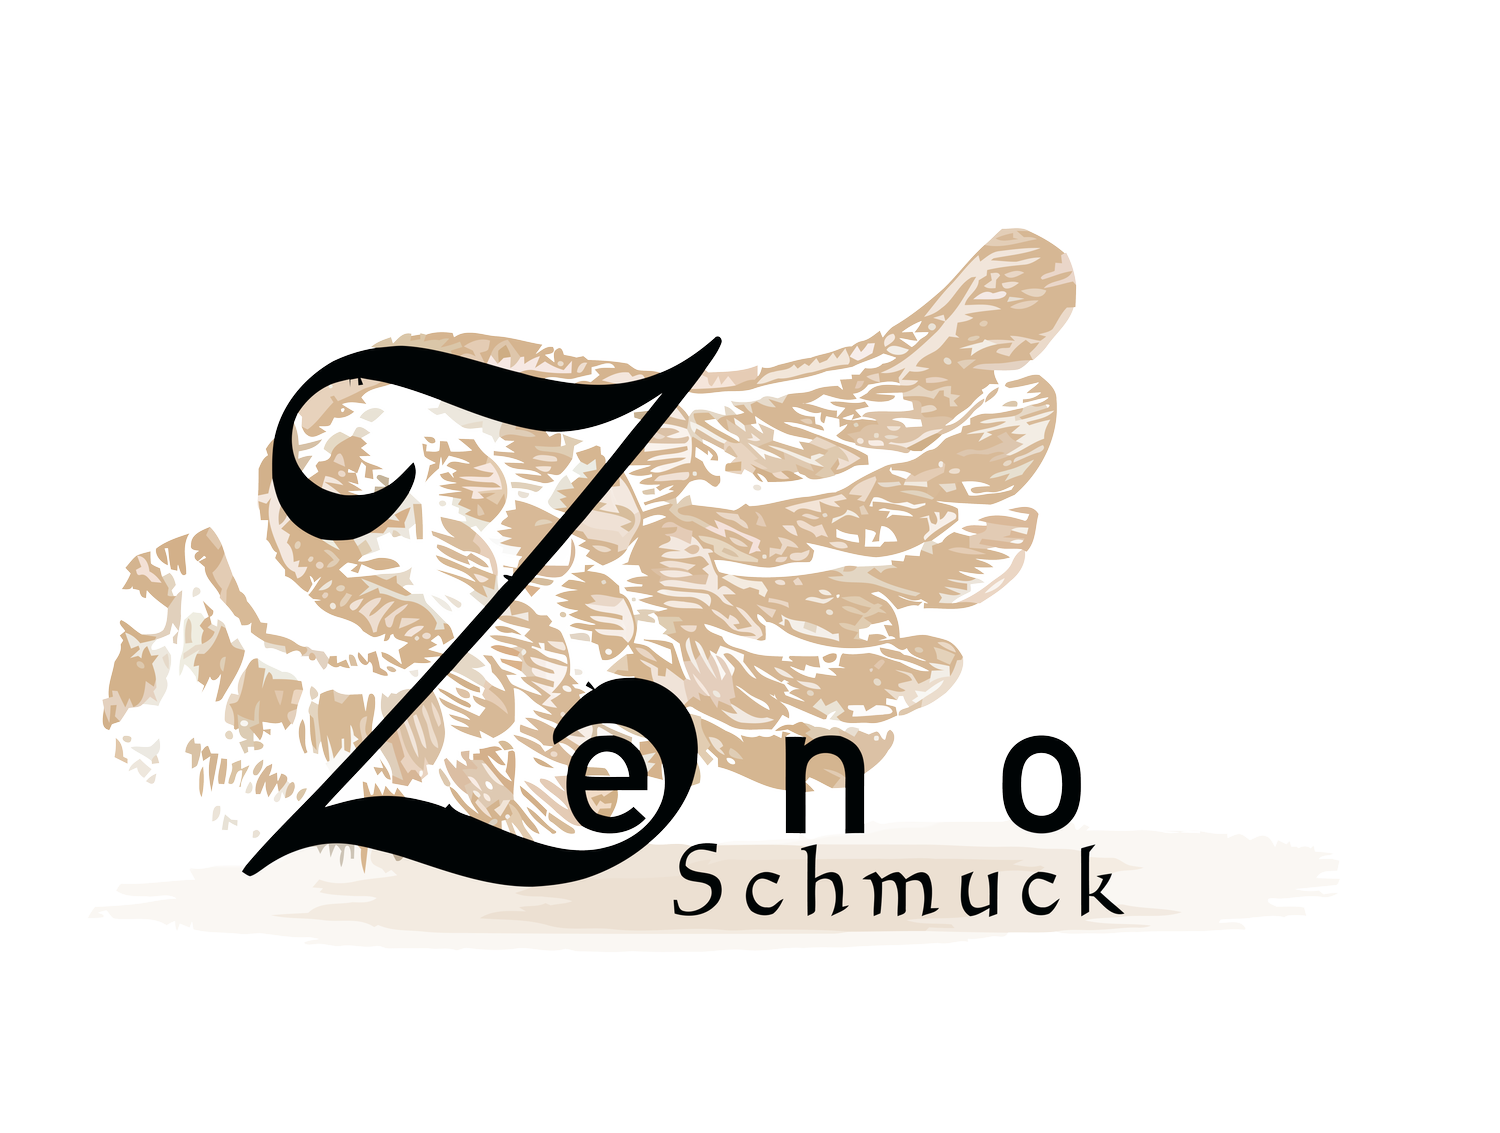 Zeno Schmuck - Goldschmiedemeister  und Restaurator